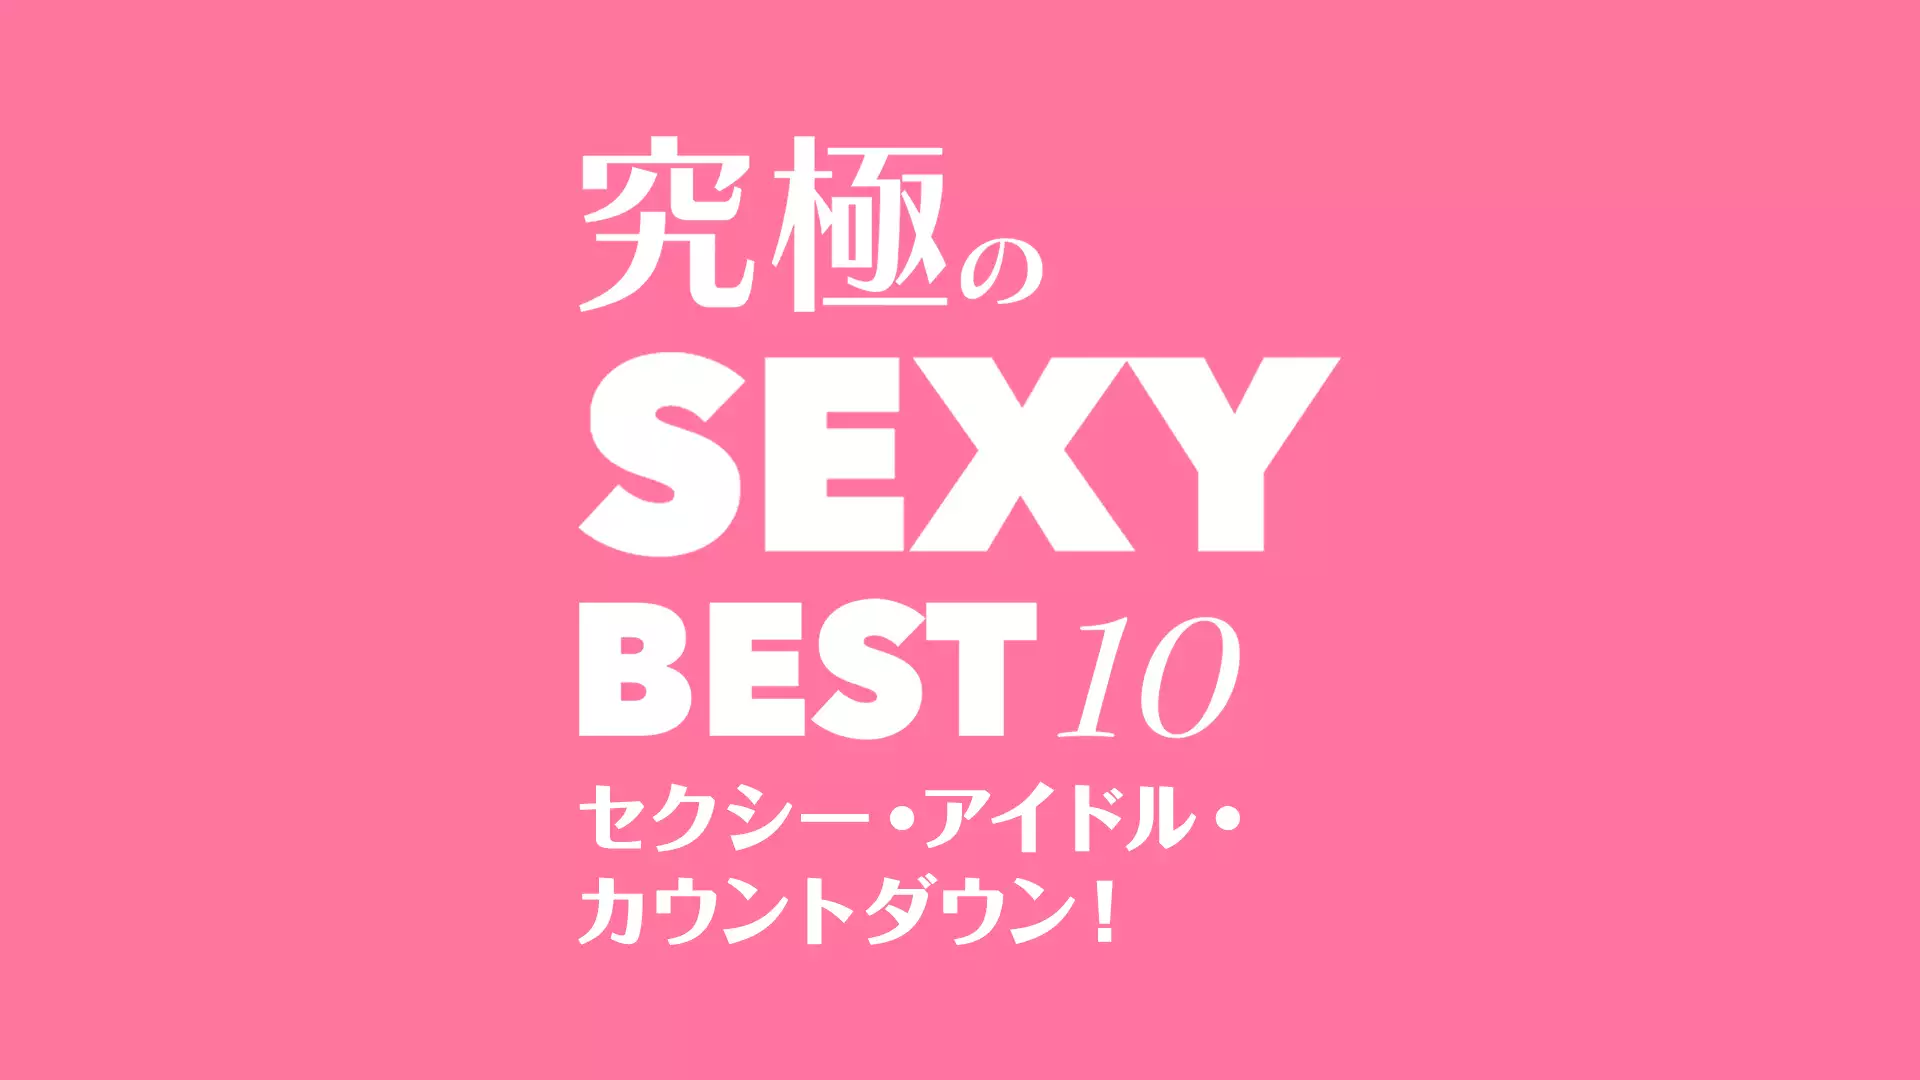 究極のSEXY BEST 10！セクシー・アイドル・カウントダウン！